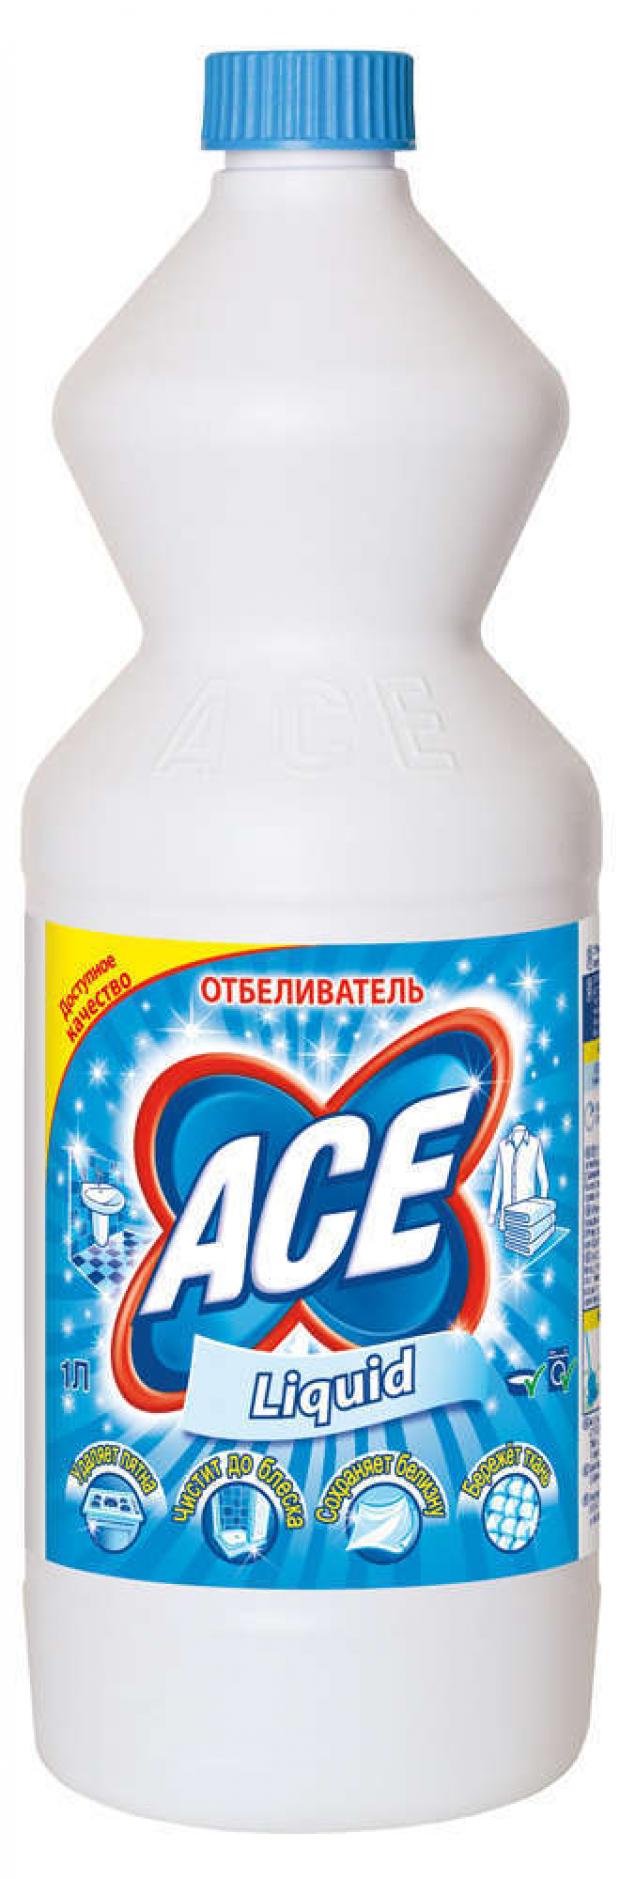 фото Отбеливатель ace бережное отбеливание универсальный жидкий, 1 л